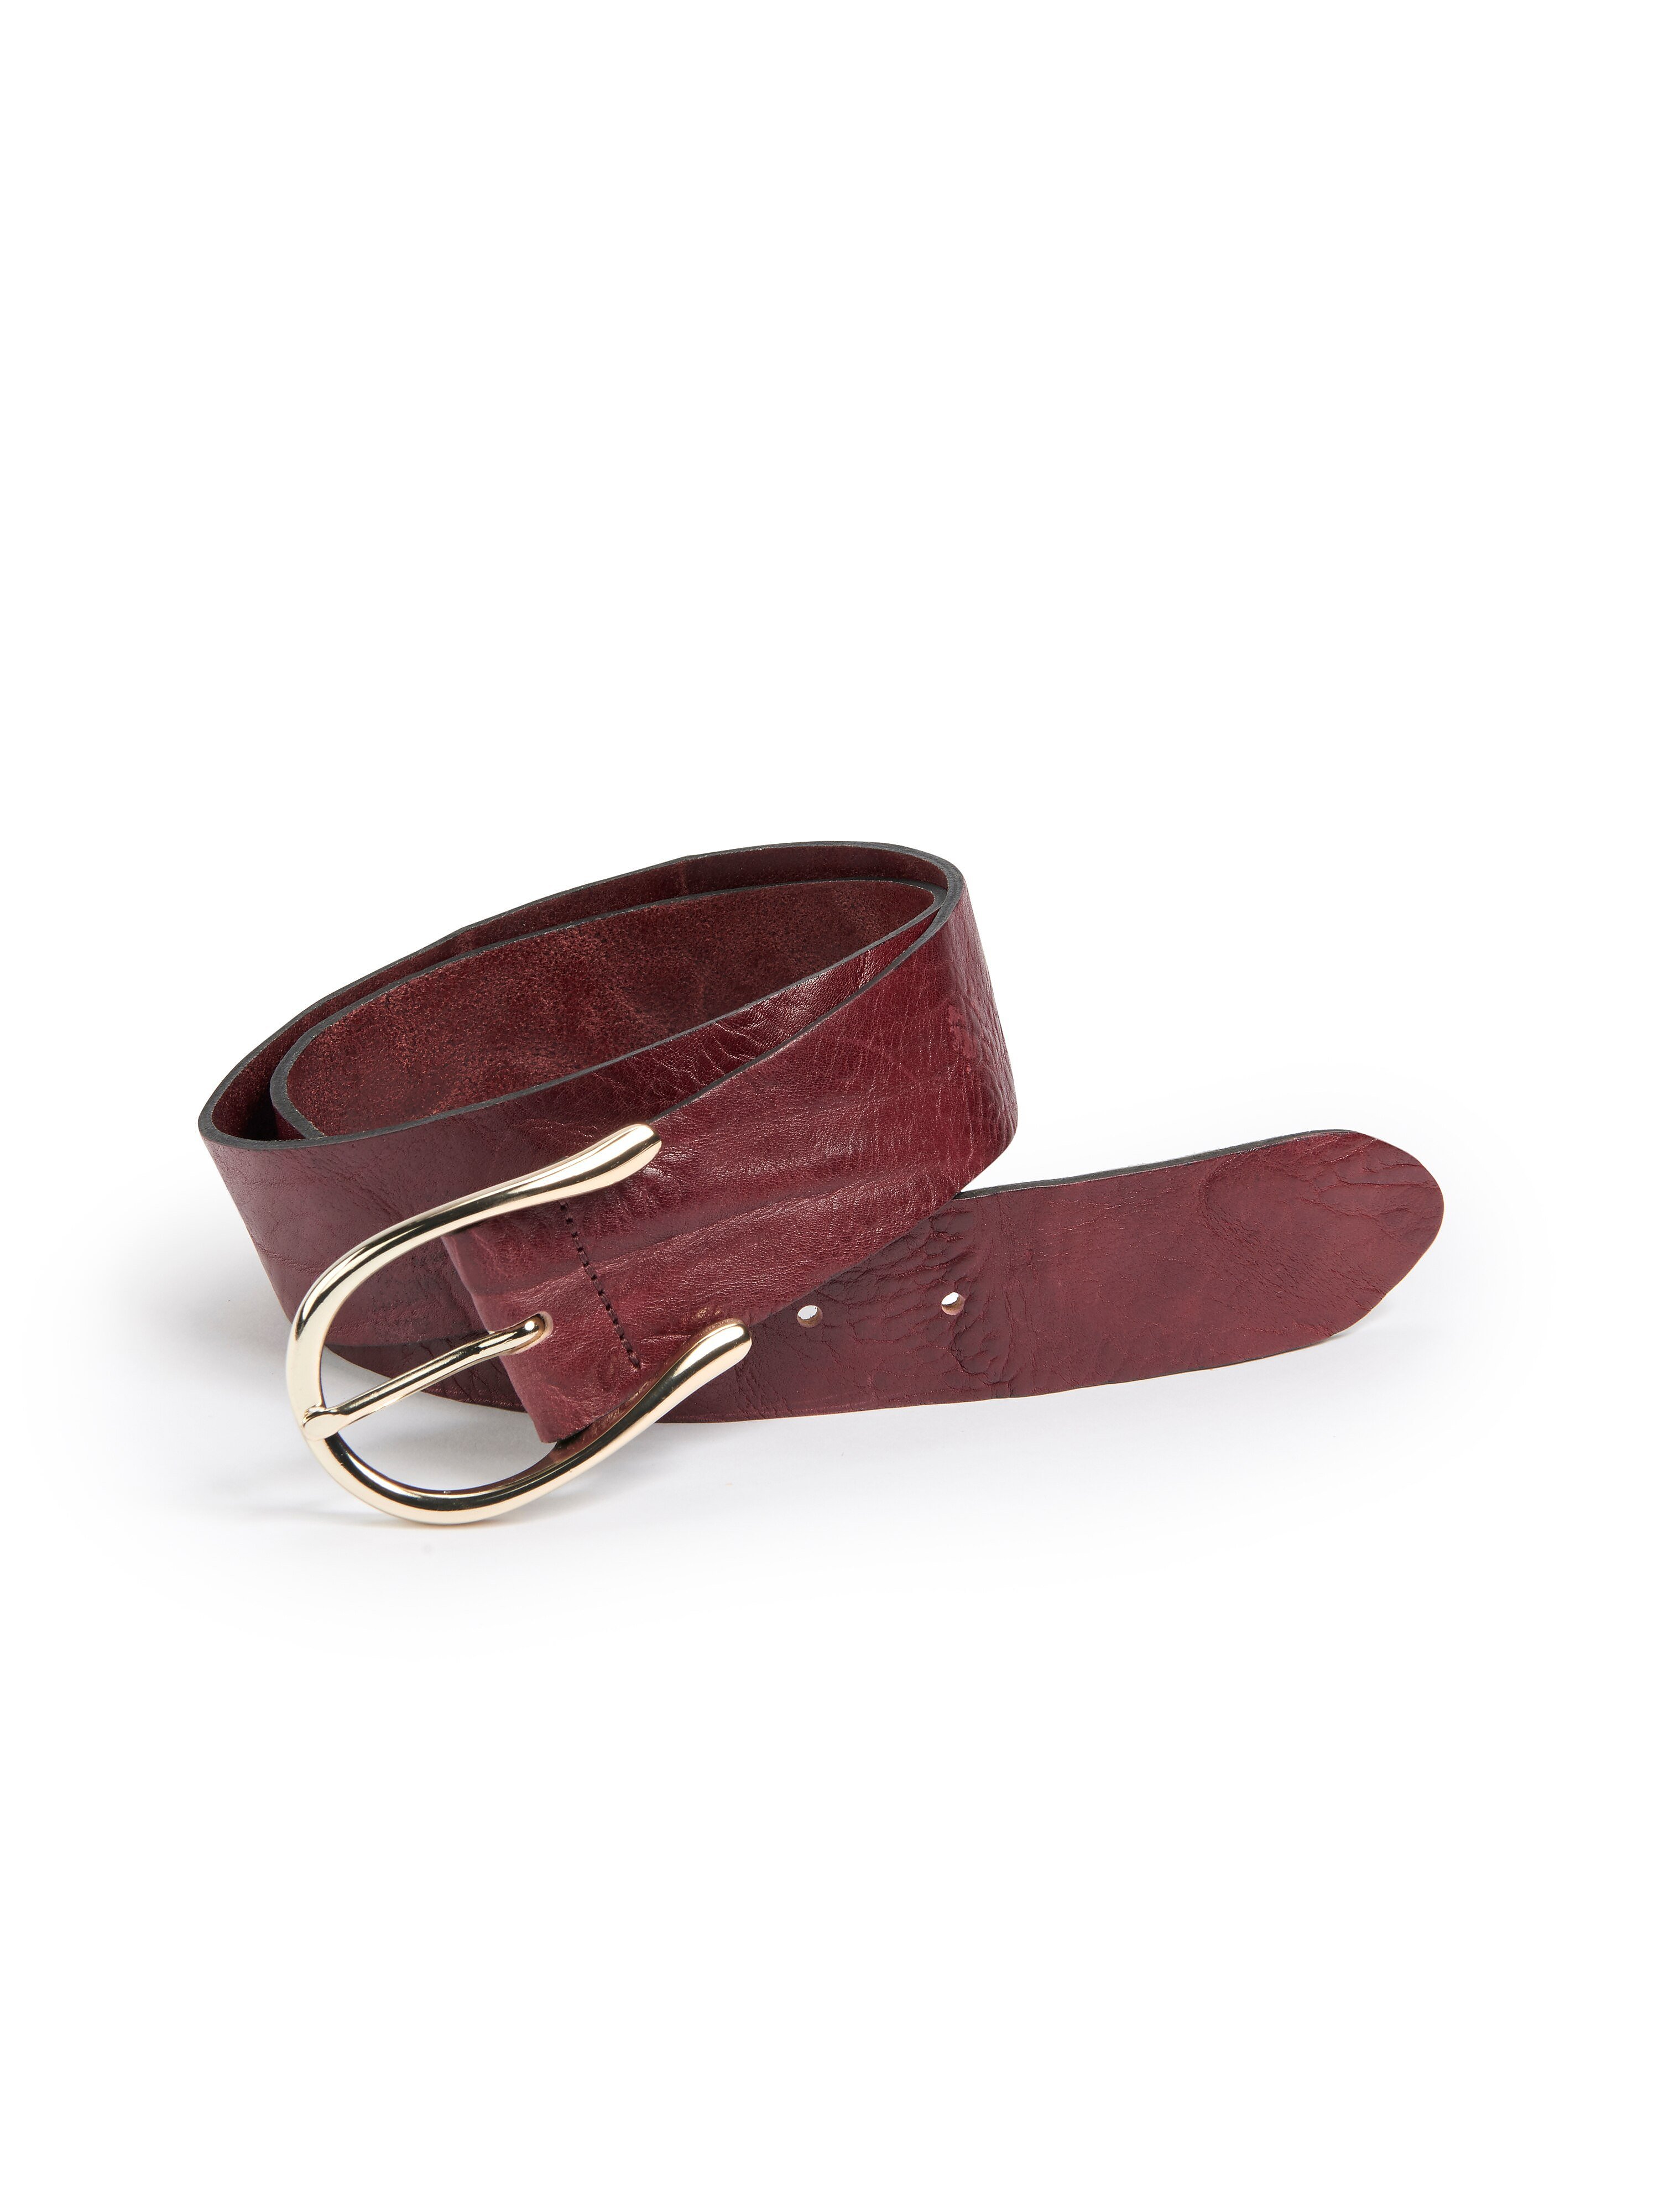 Full grain leather belt Peter Hahn red